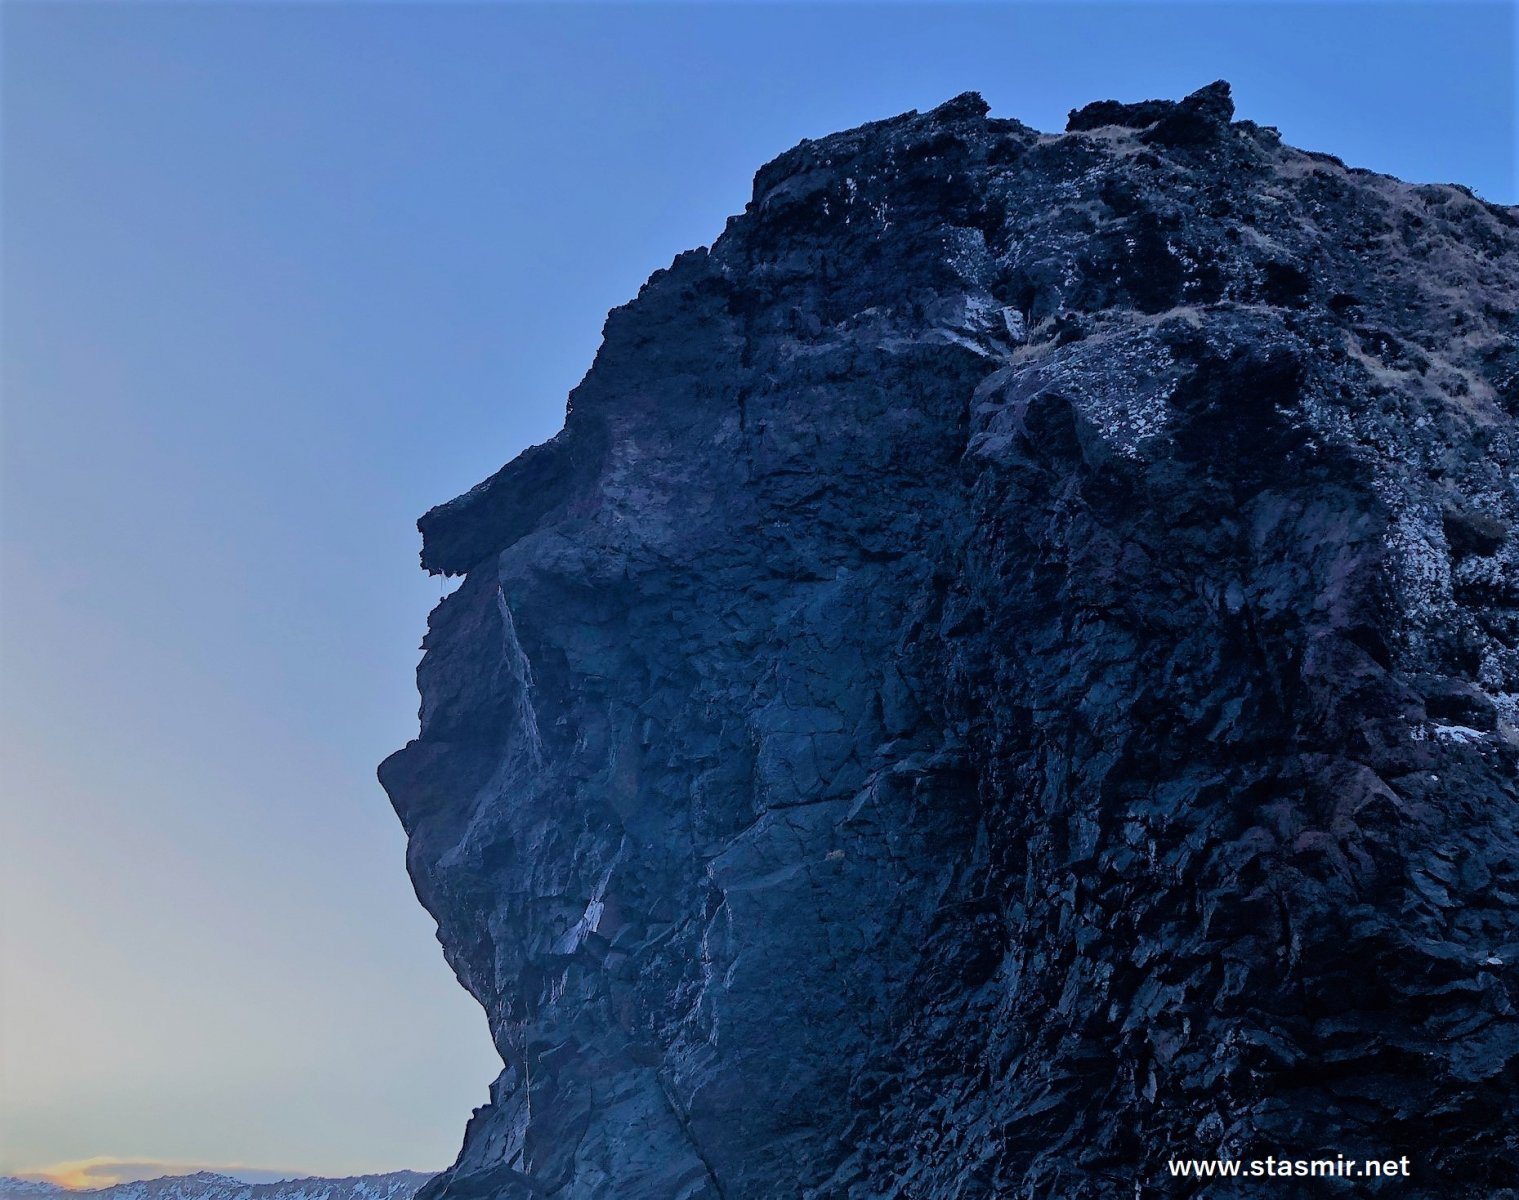 shining: Екатерина 2 в скалах в Исландии, фото Стасмир, photo Stasmir